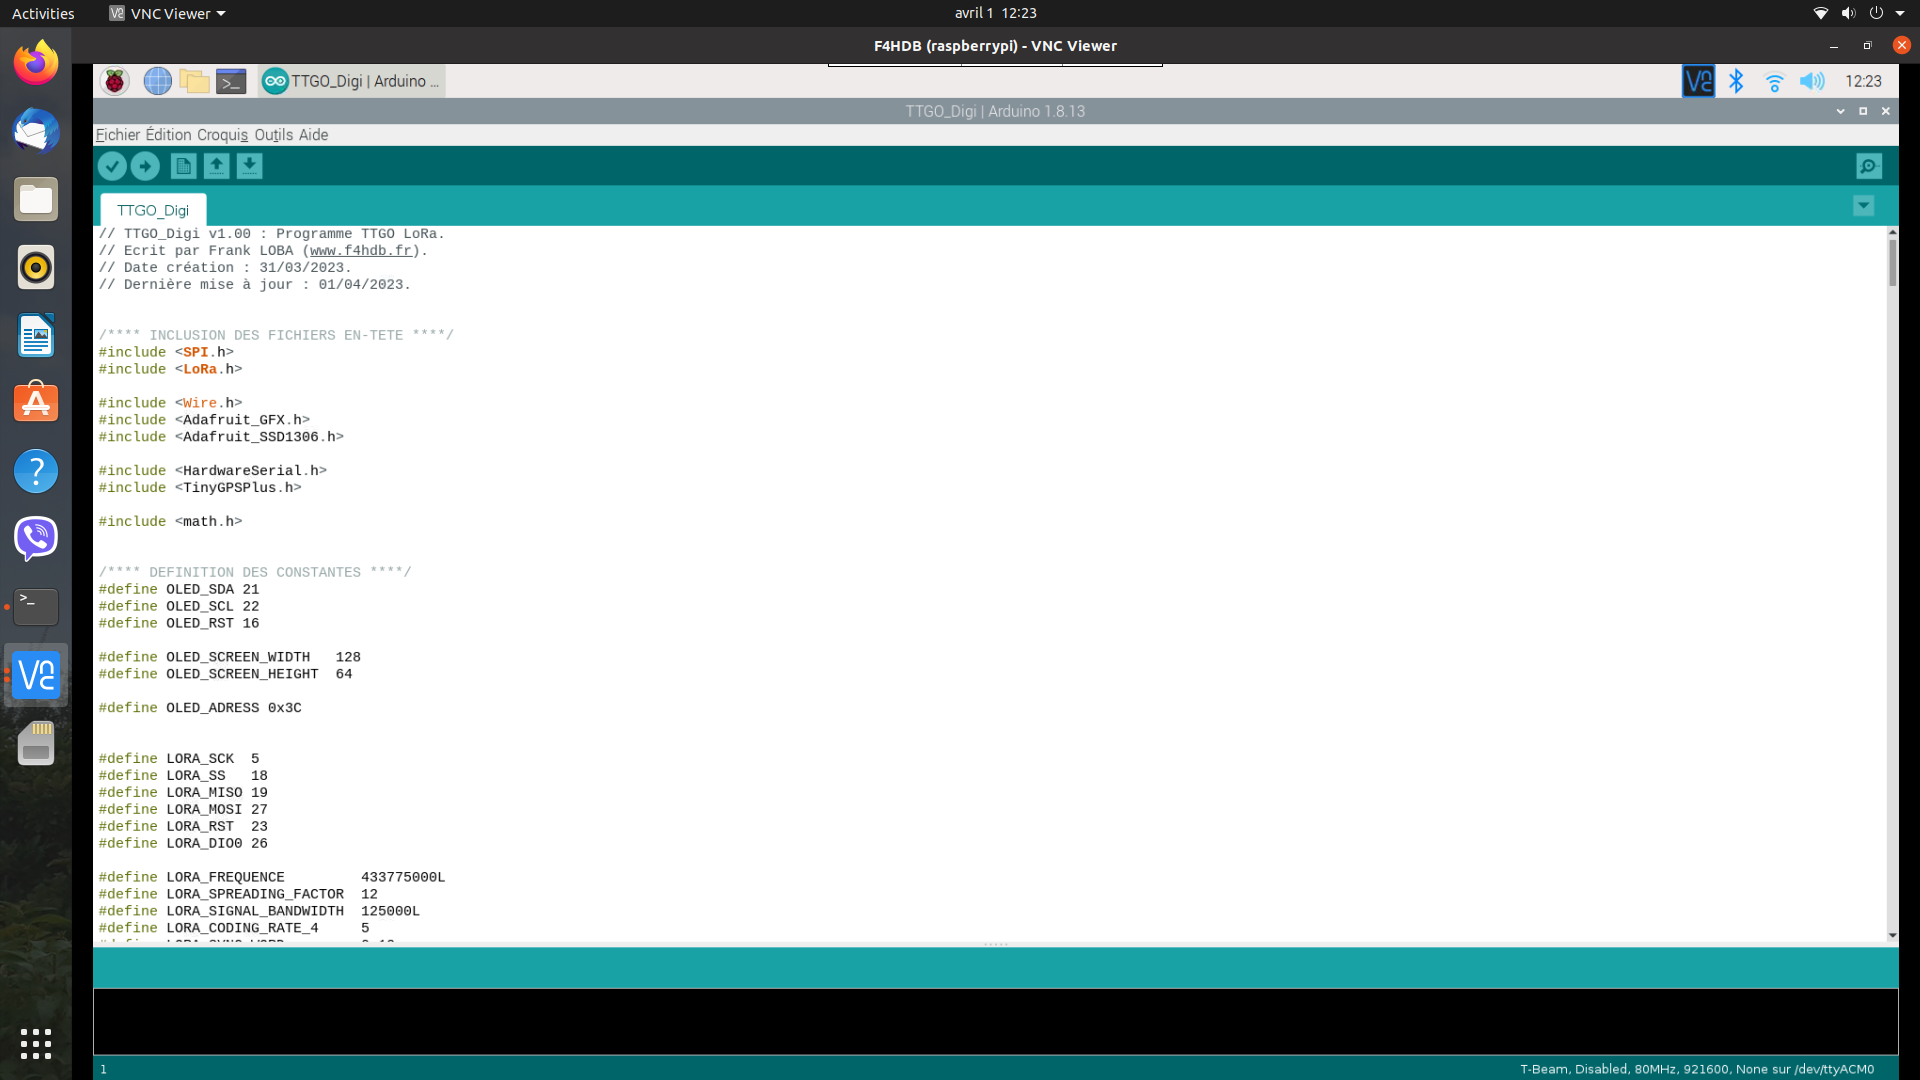 Capture écran de l'Arduino IDE